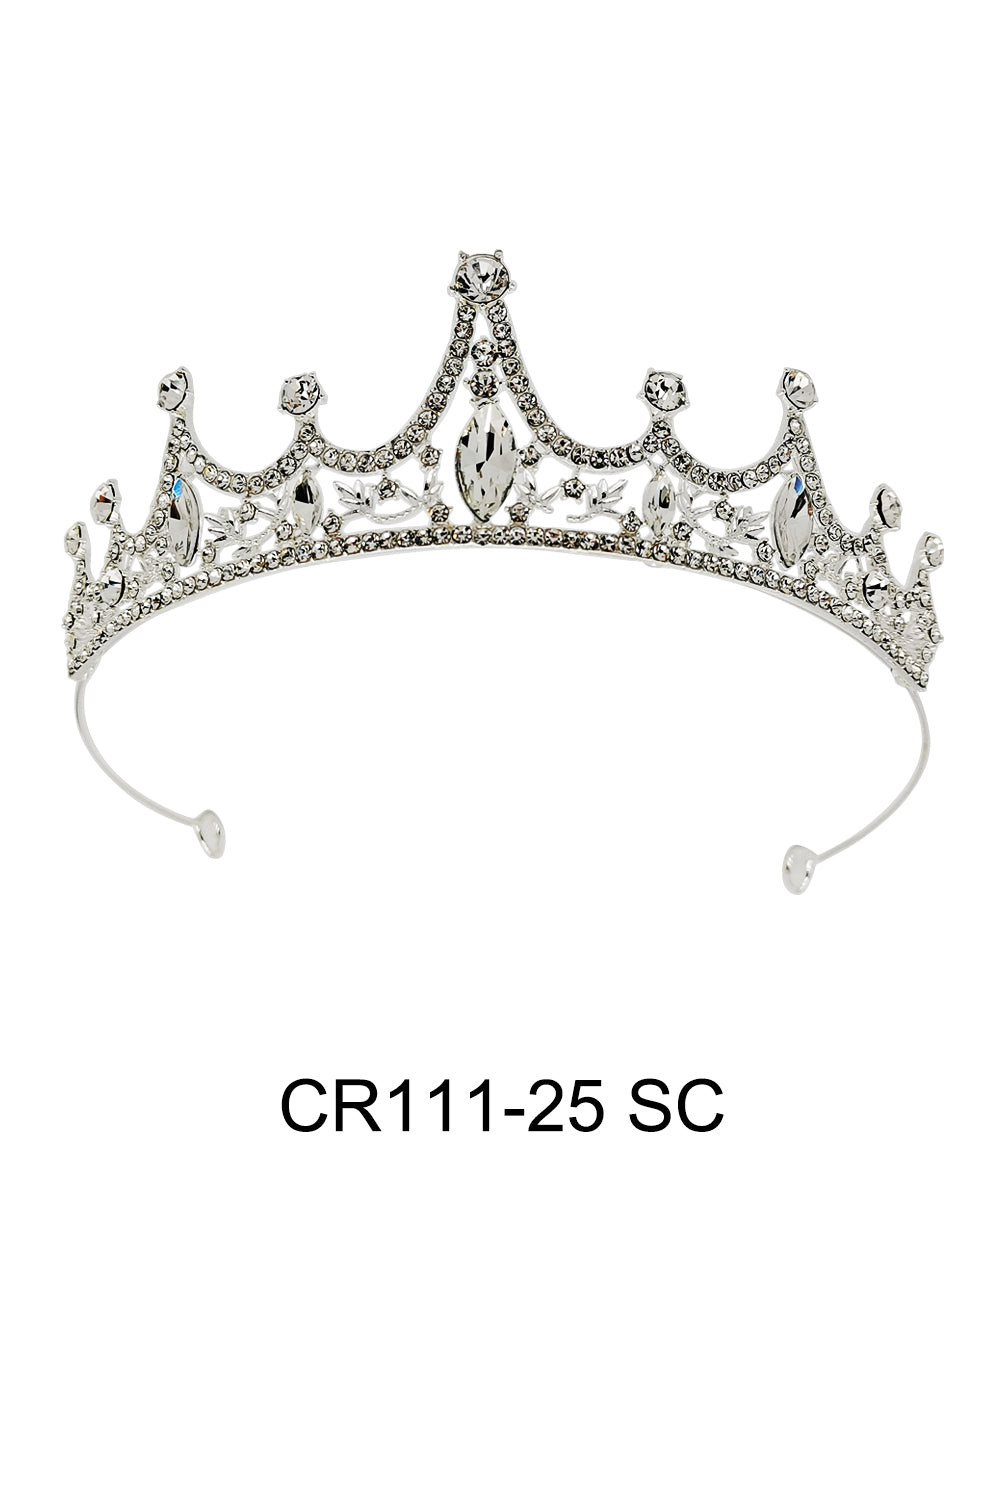 CR111-25SC (6PC)